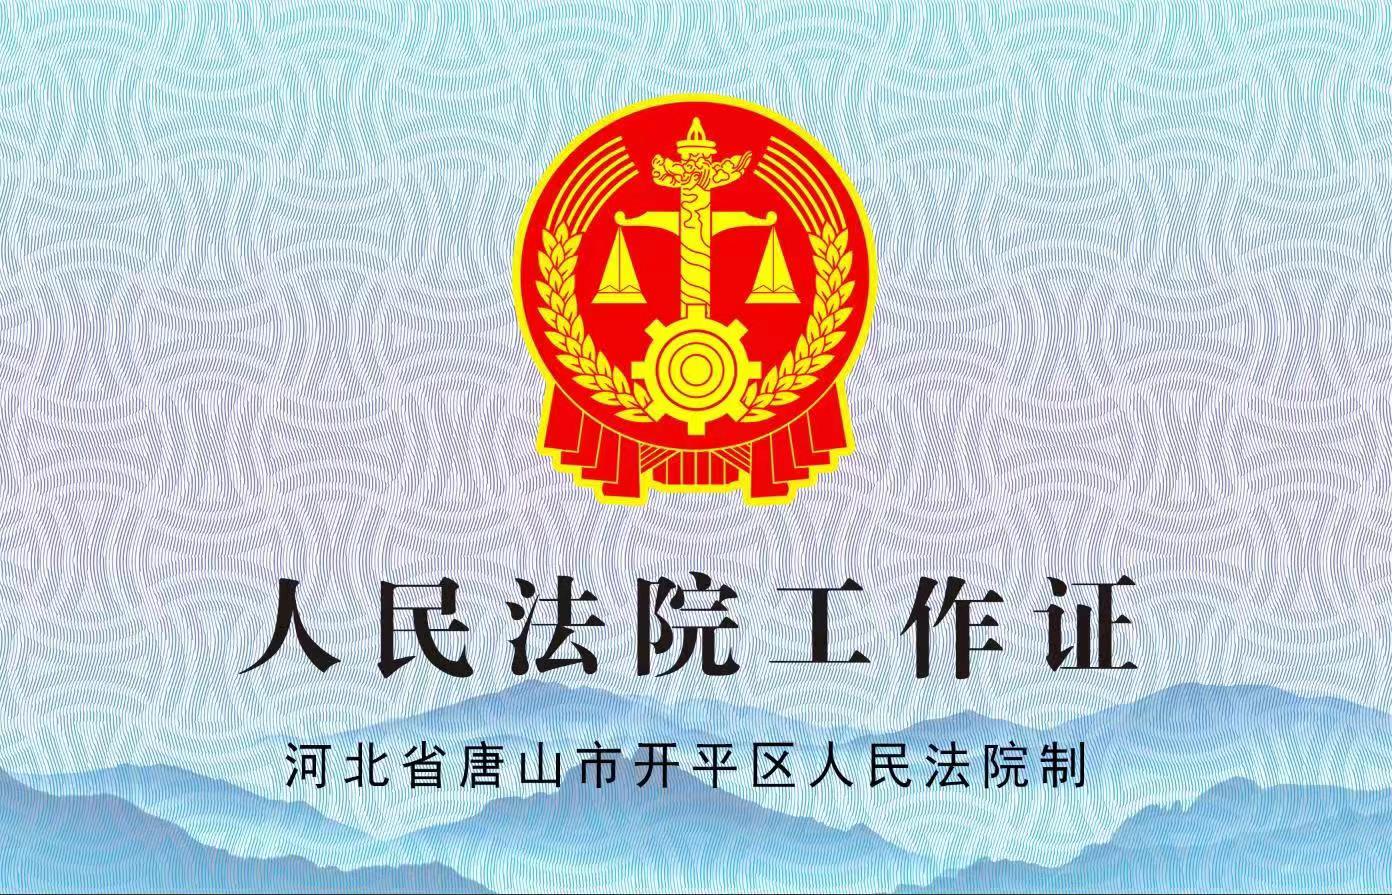 唐山市开平区人民法院关于启用新版工作证件的公告